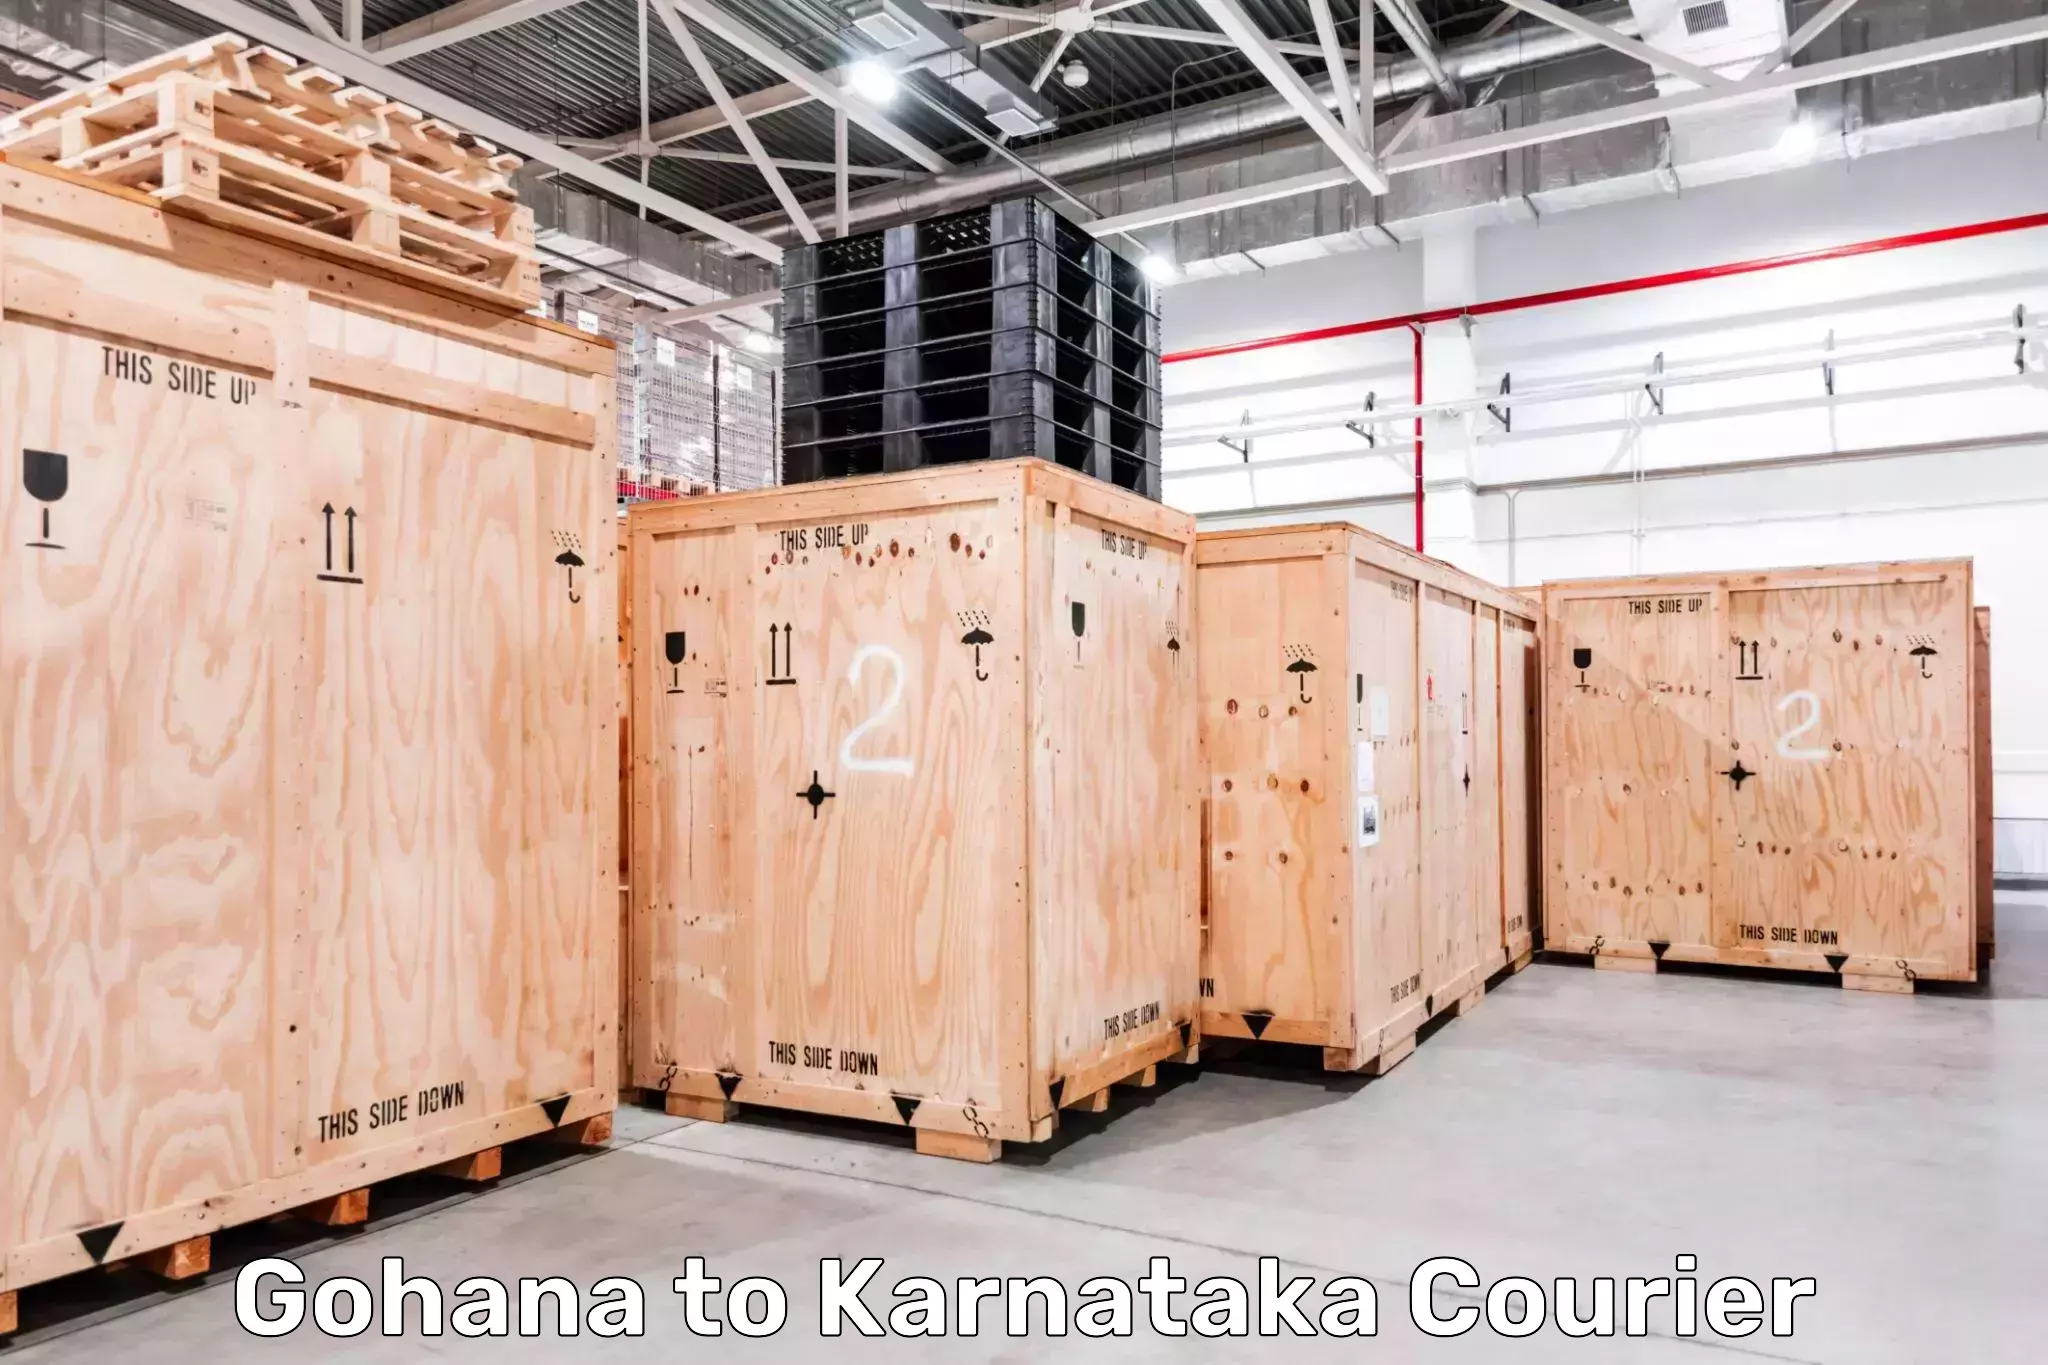 Holiday shipping services Gohana to Karnataka